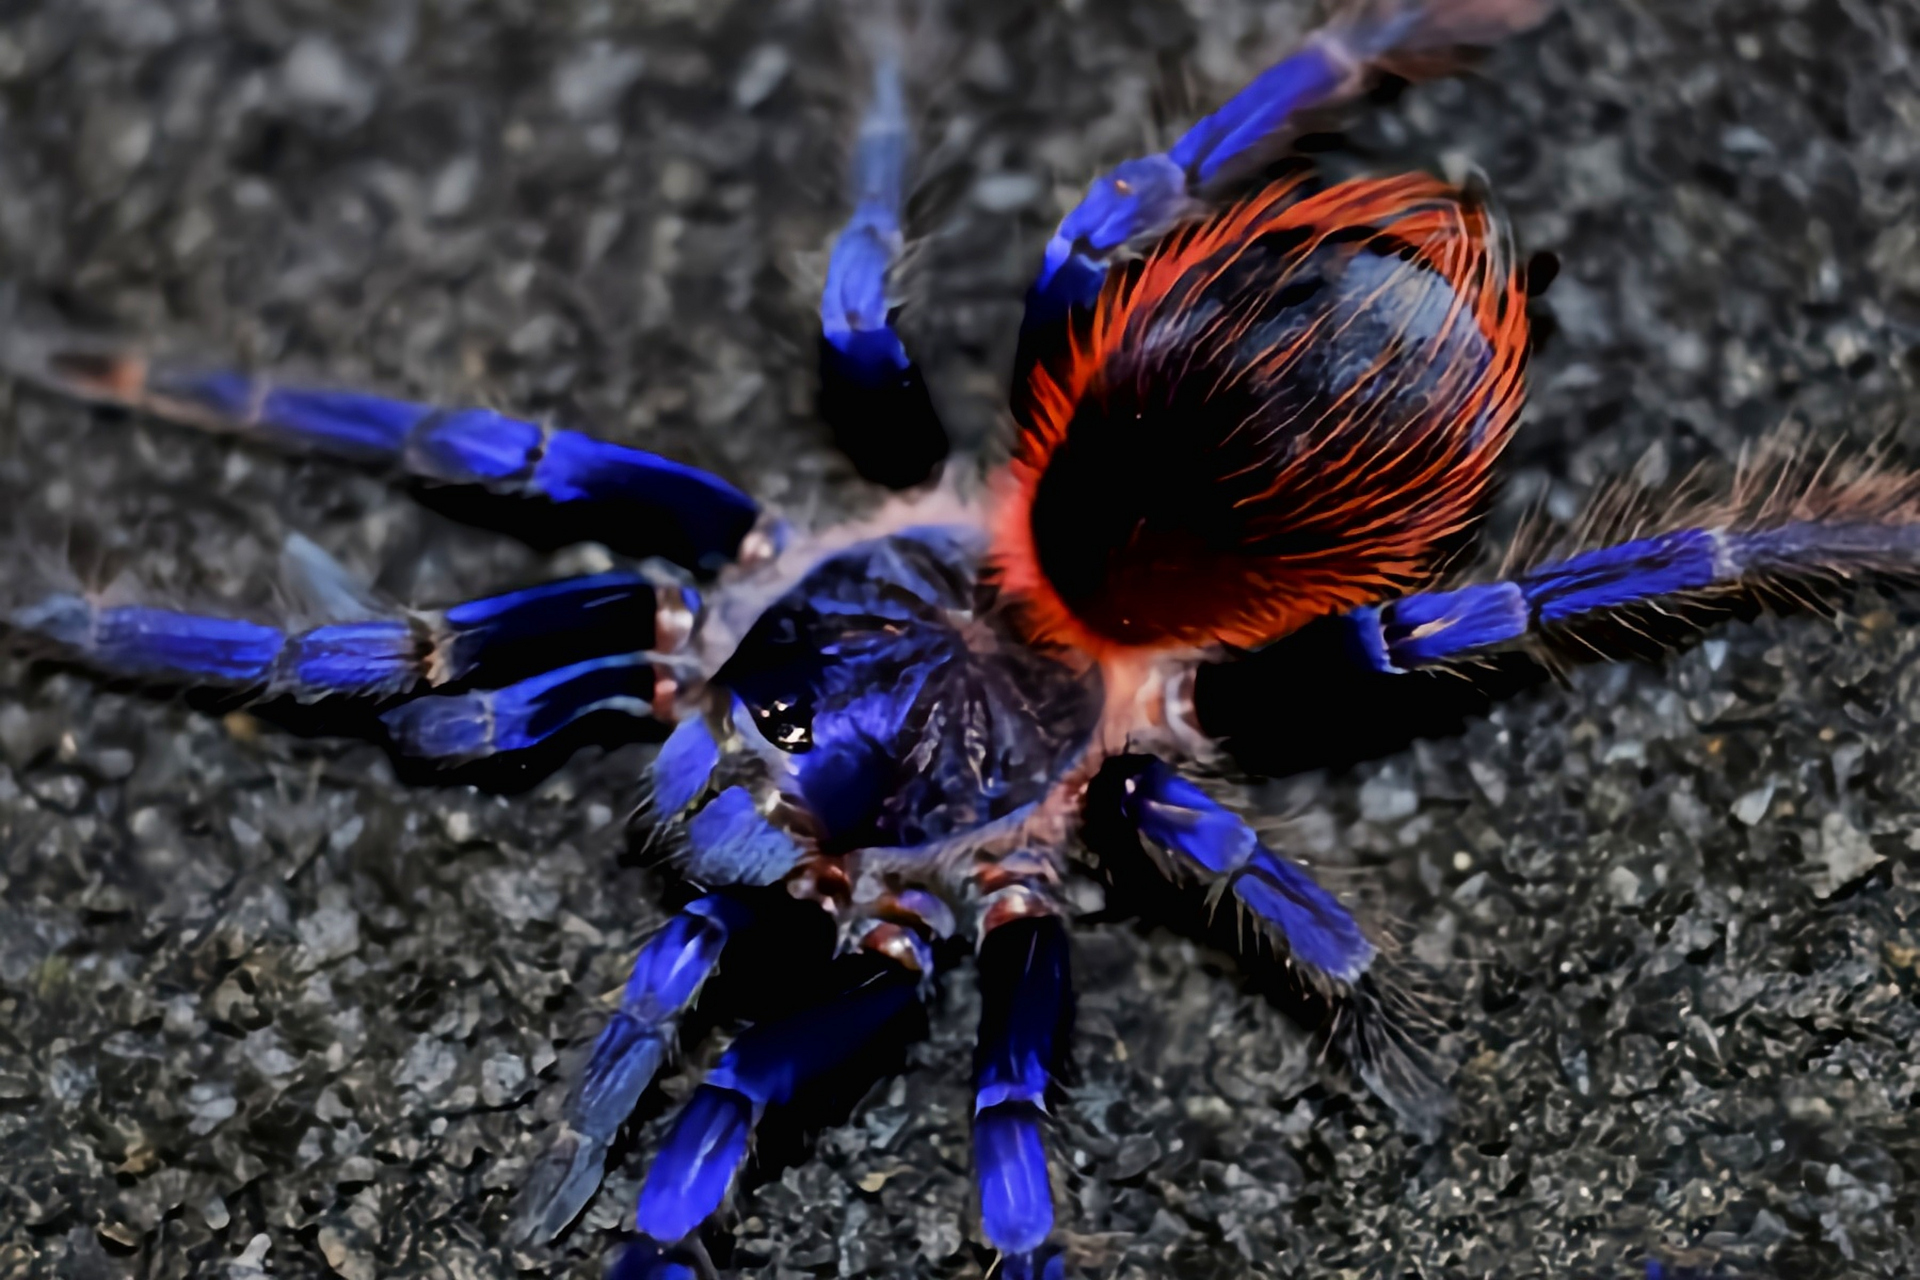 巴西大蓝蛛别名蓝色狼蛛,巴伊亚蓝蛛,是蜘蛛目,捕鸟蛛科动物,2012年才